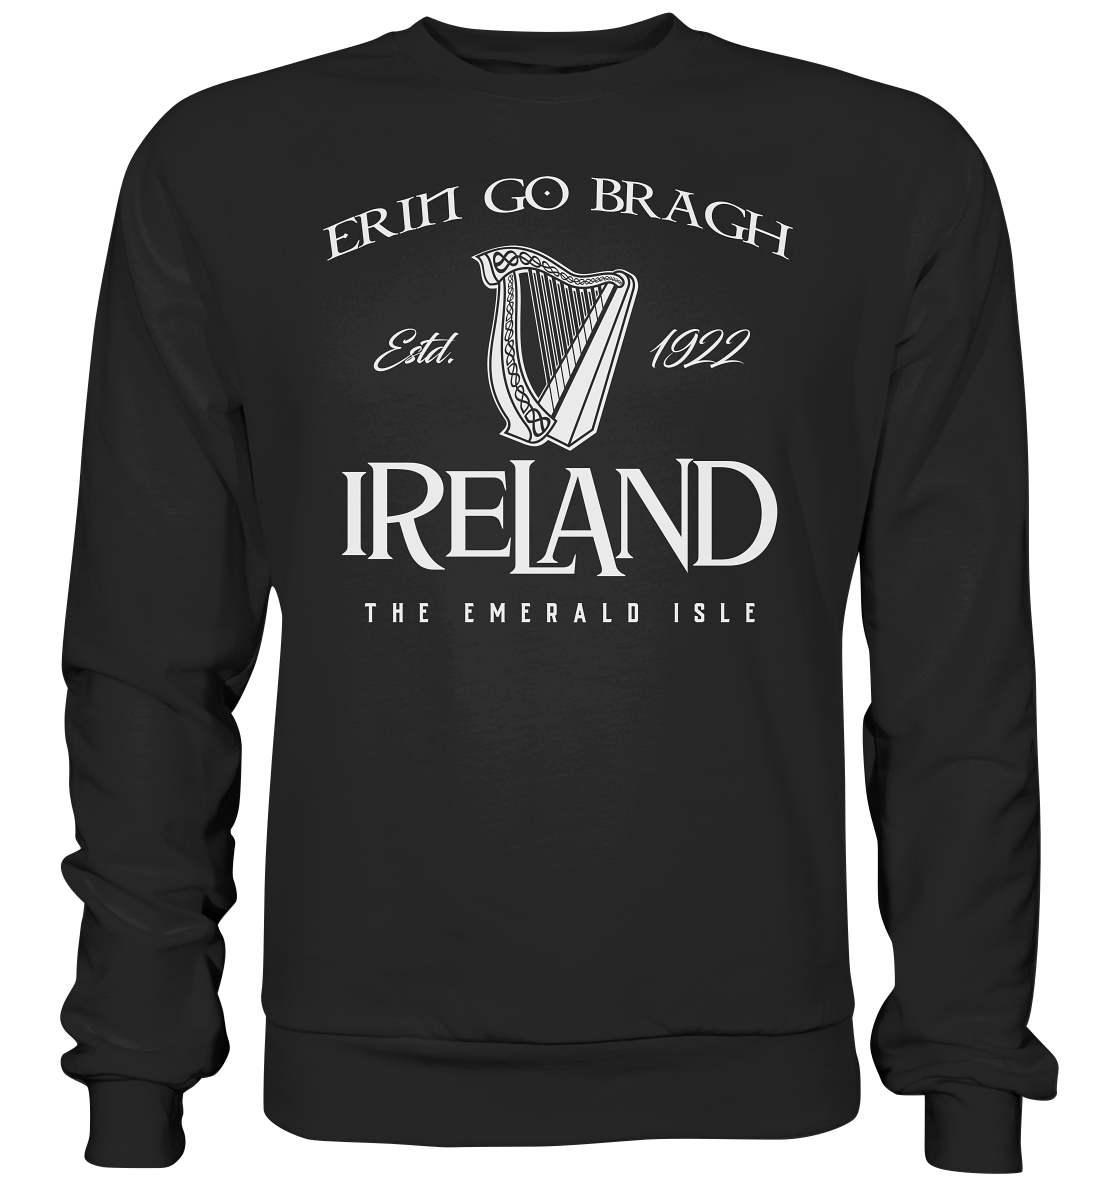 Ireland "Erin Go Bragh / The Emerald Isle" - Premium Sweatshirt